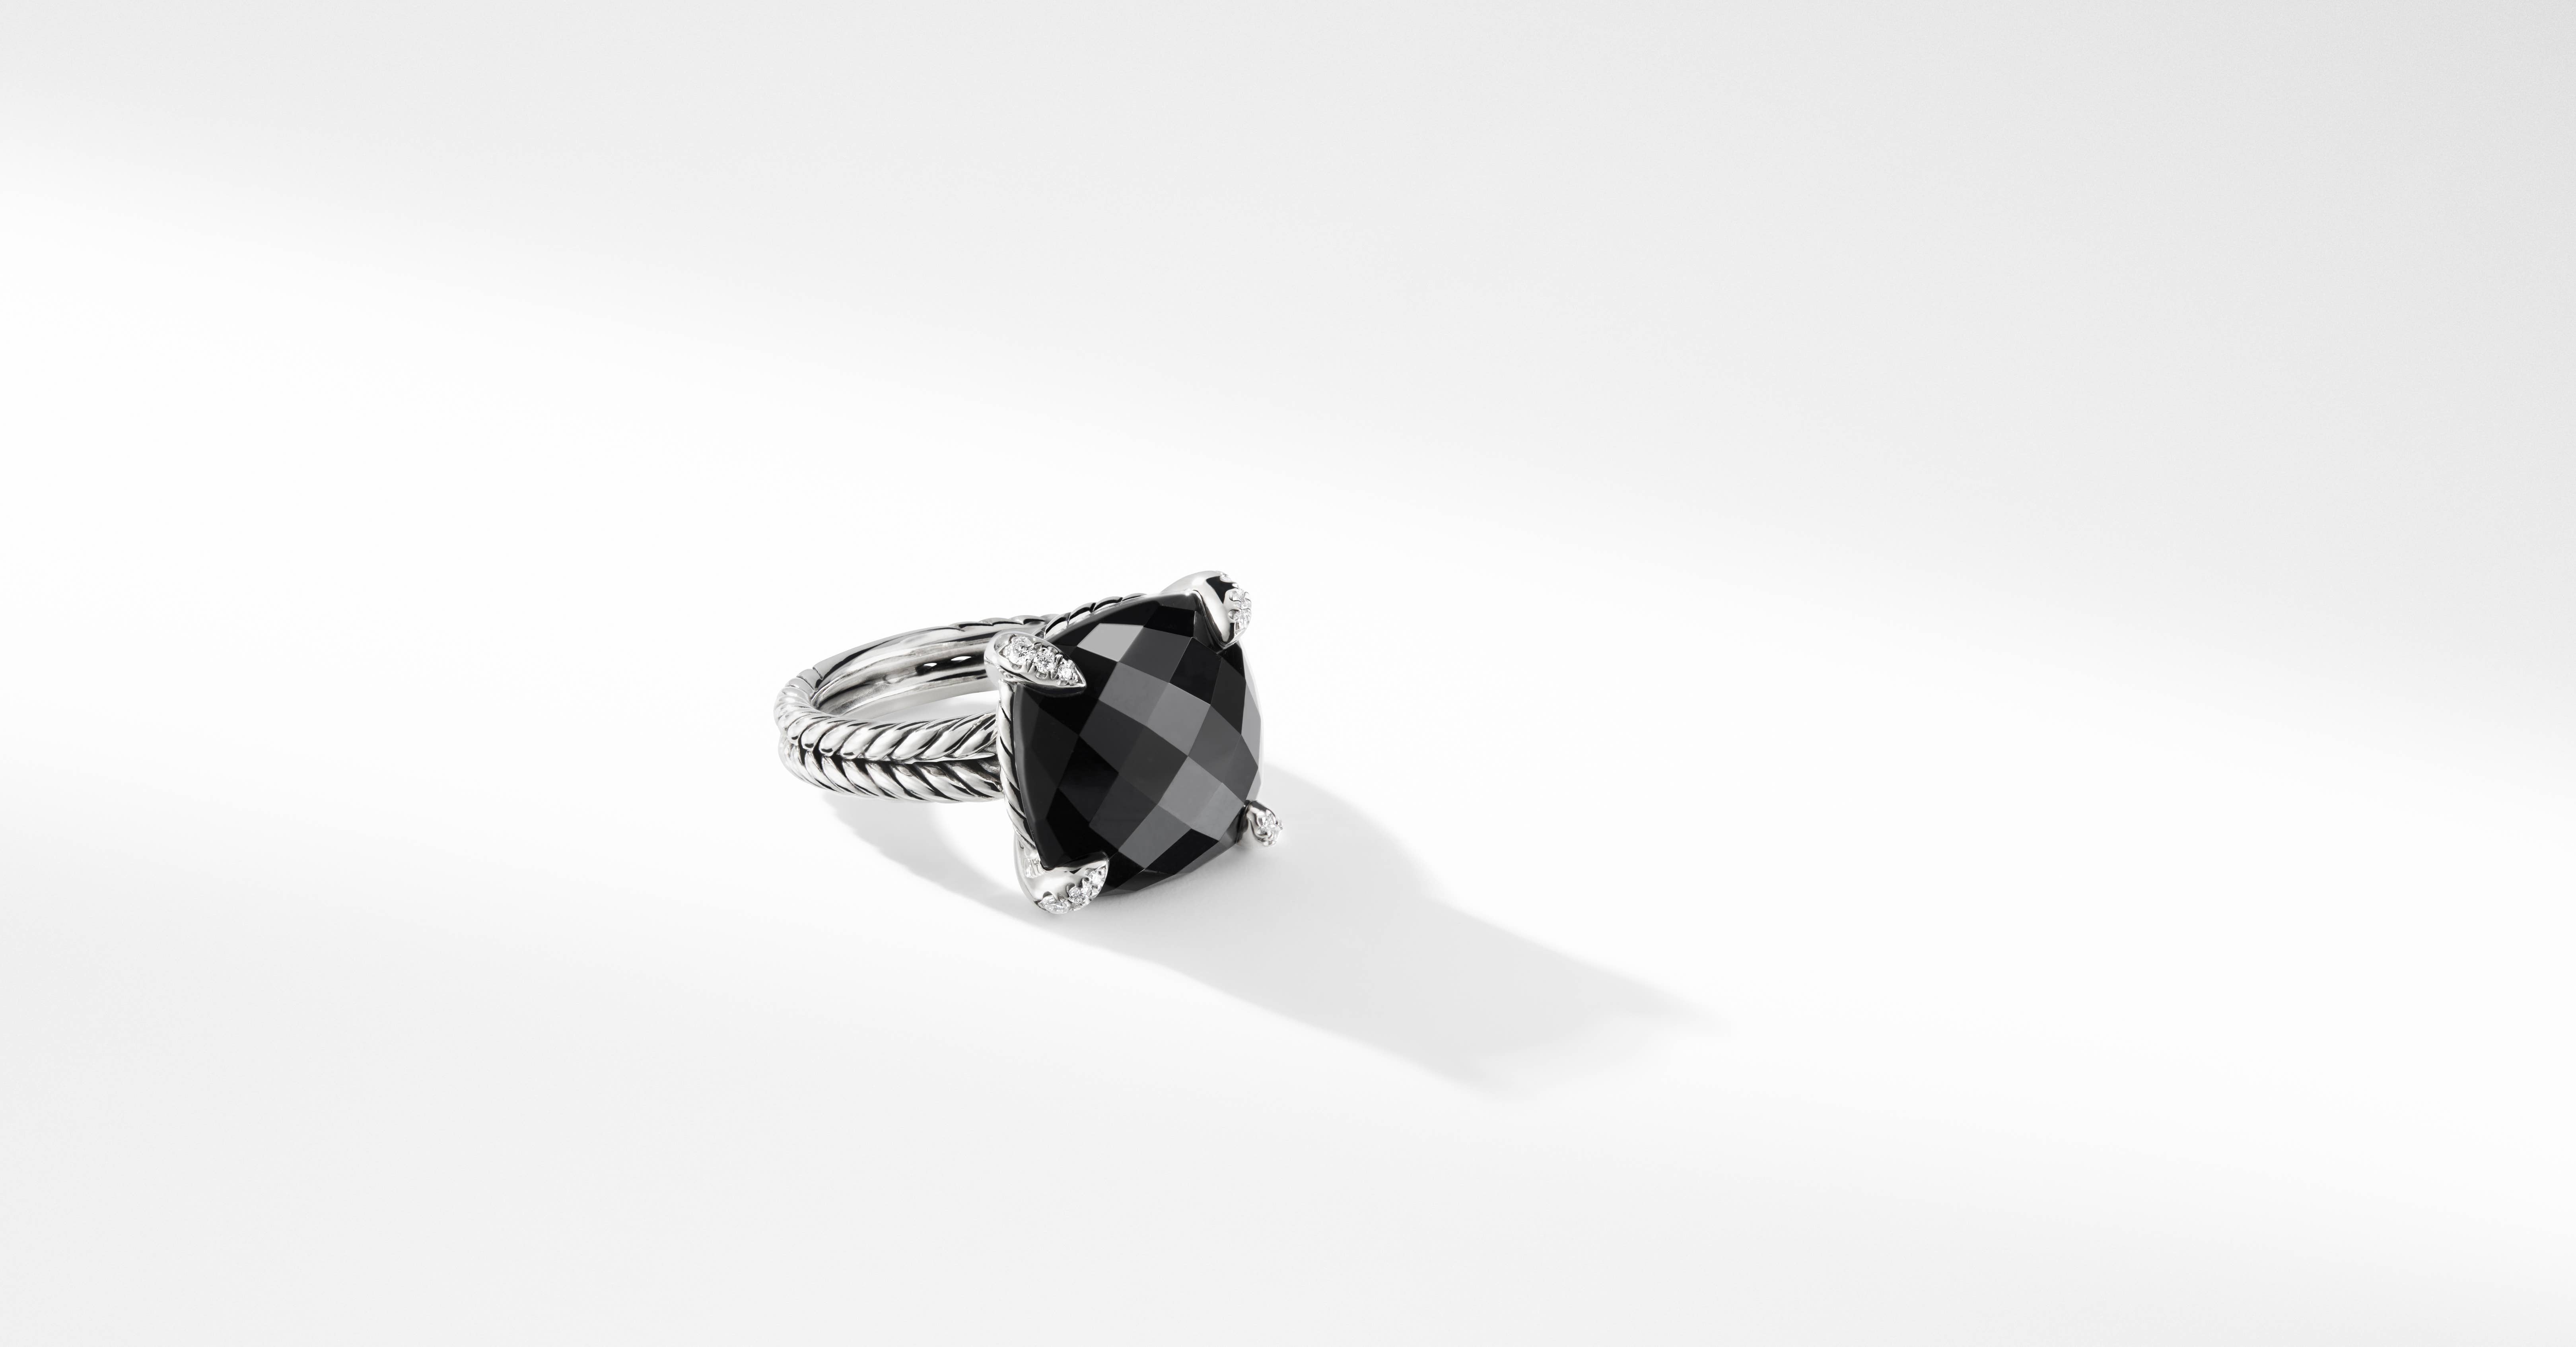  デイビット・ユーマン レディース リング アクセサリー ChatelaineR Pave Bezel Ring with Diamonds black onyx